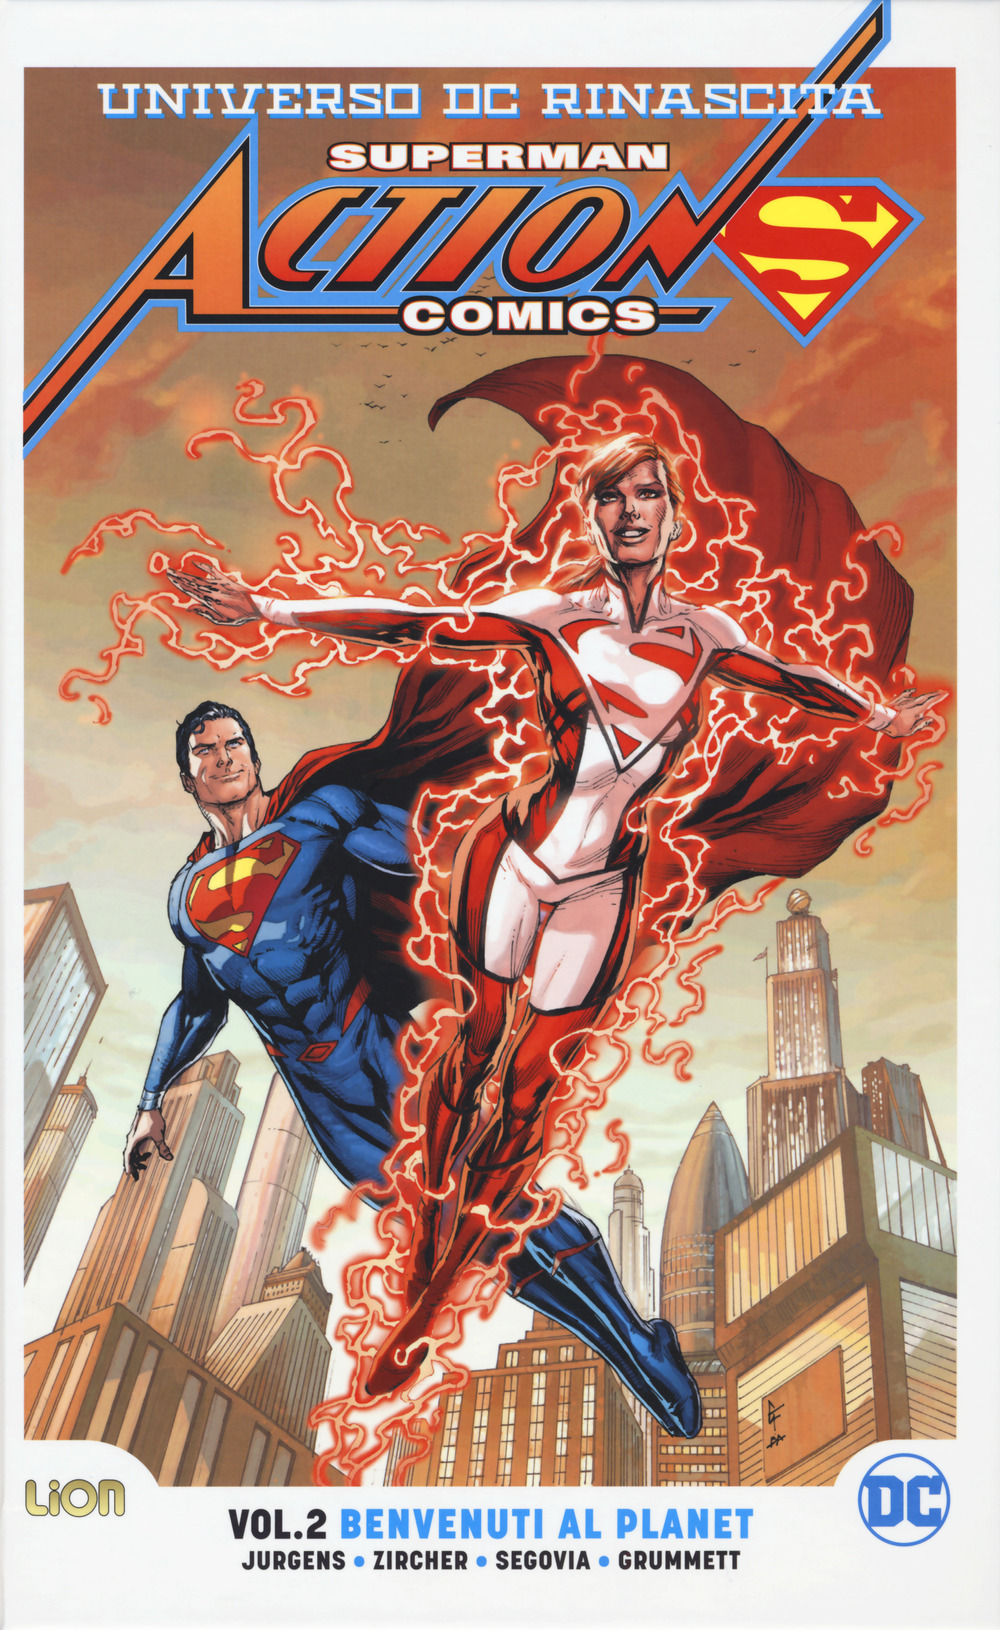 Universo DC. Rinascita. Superman. Action Comics. Vol. 2: Benvenuti al Planet